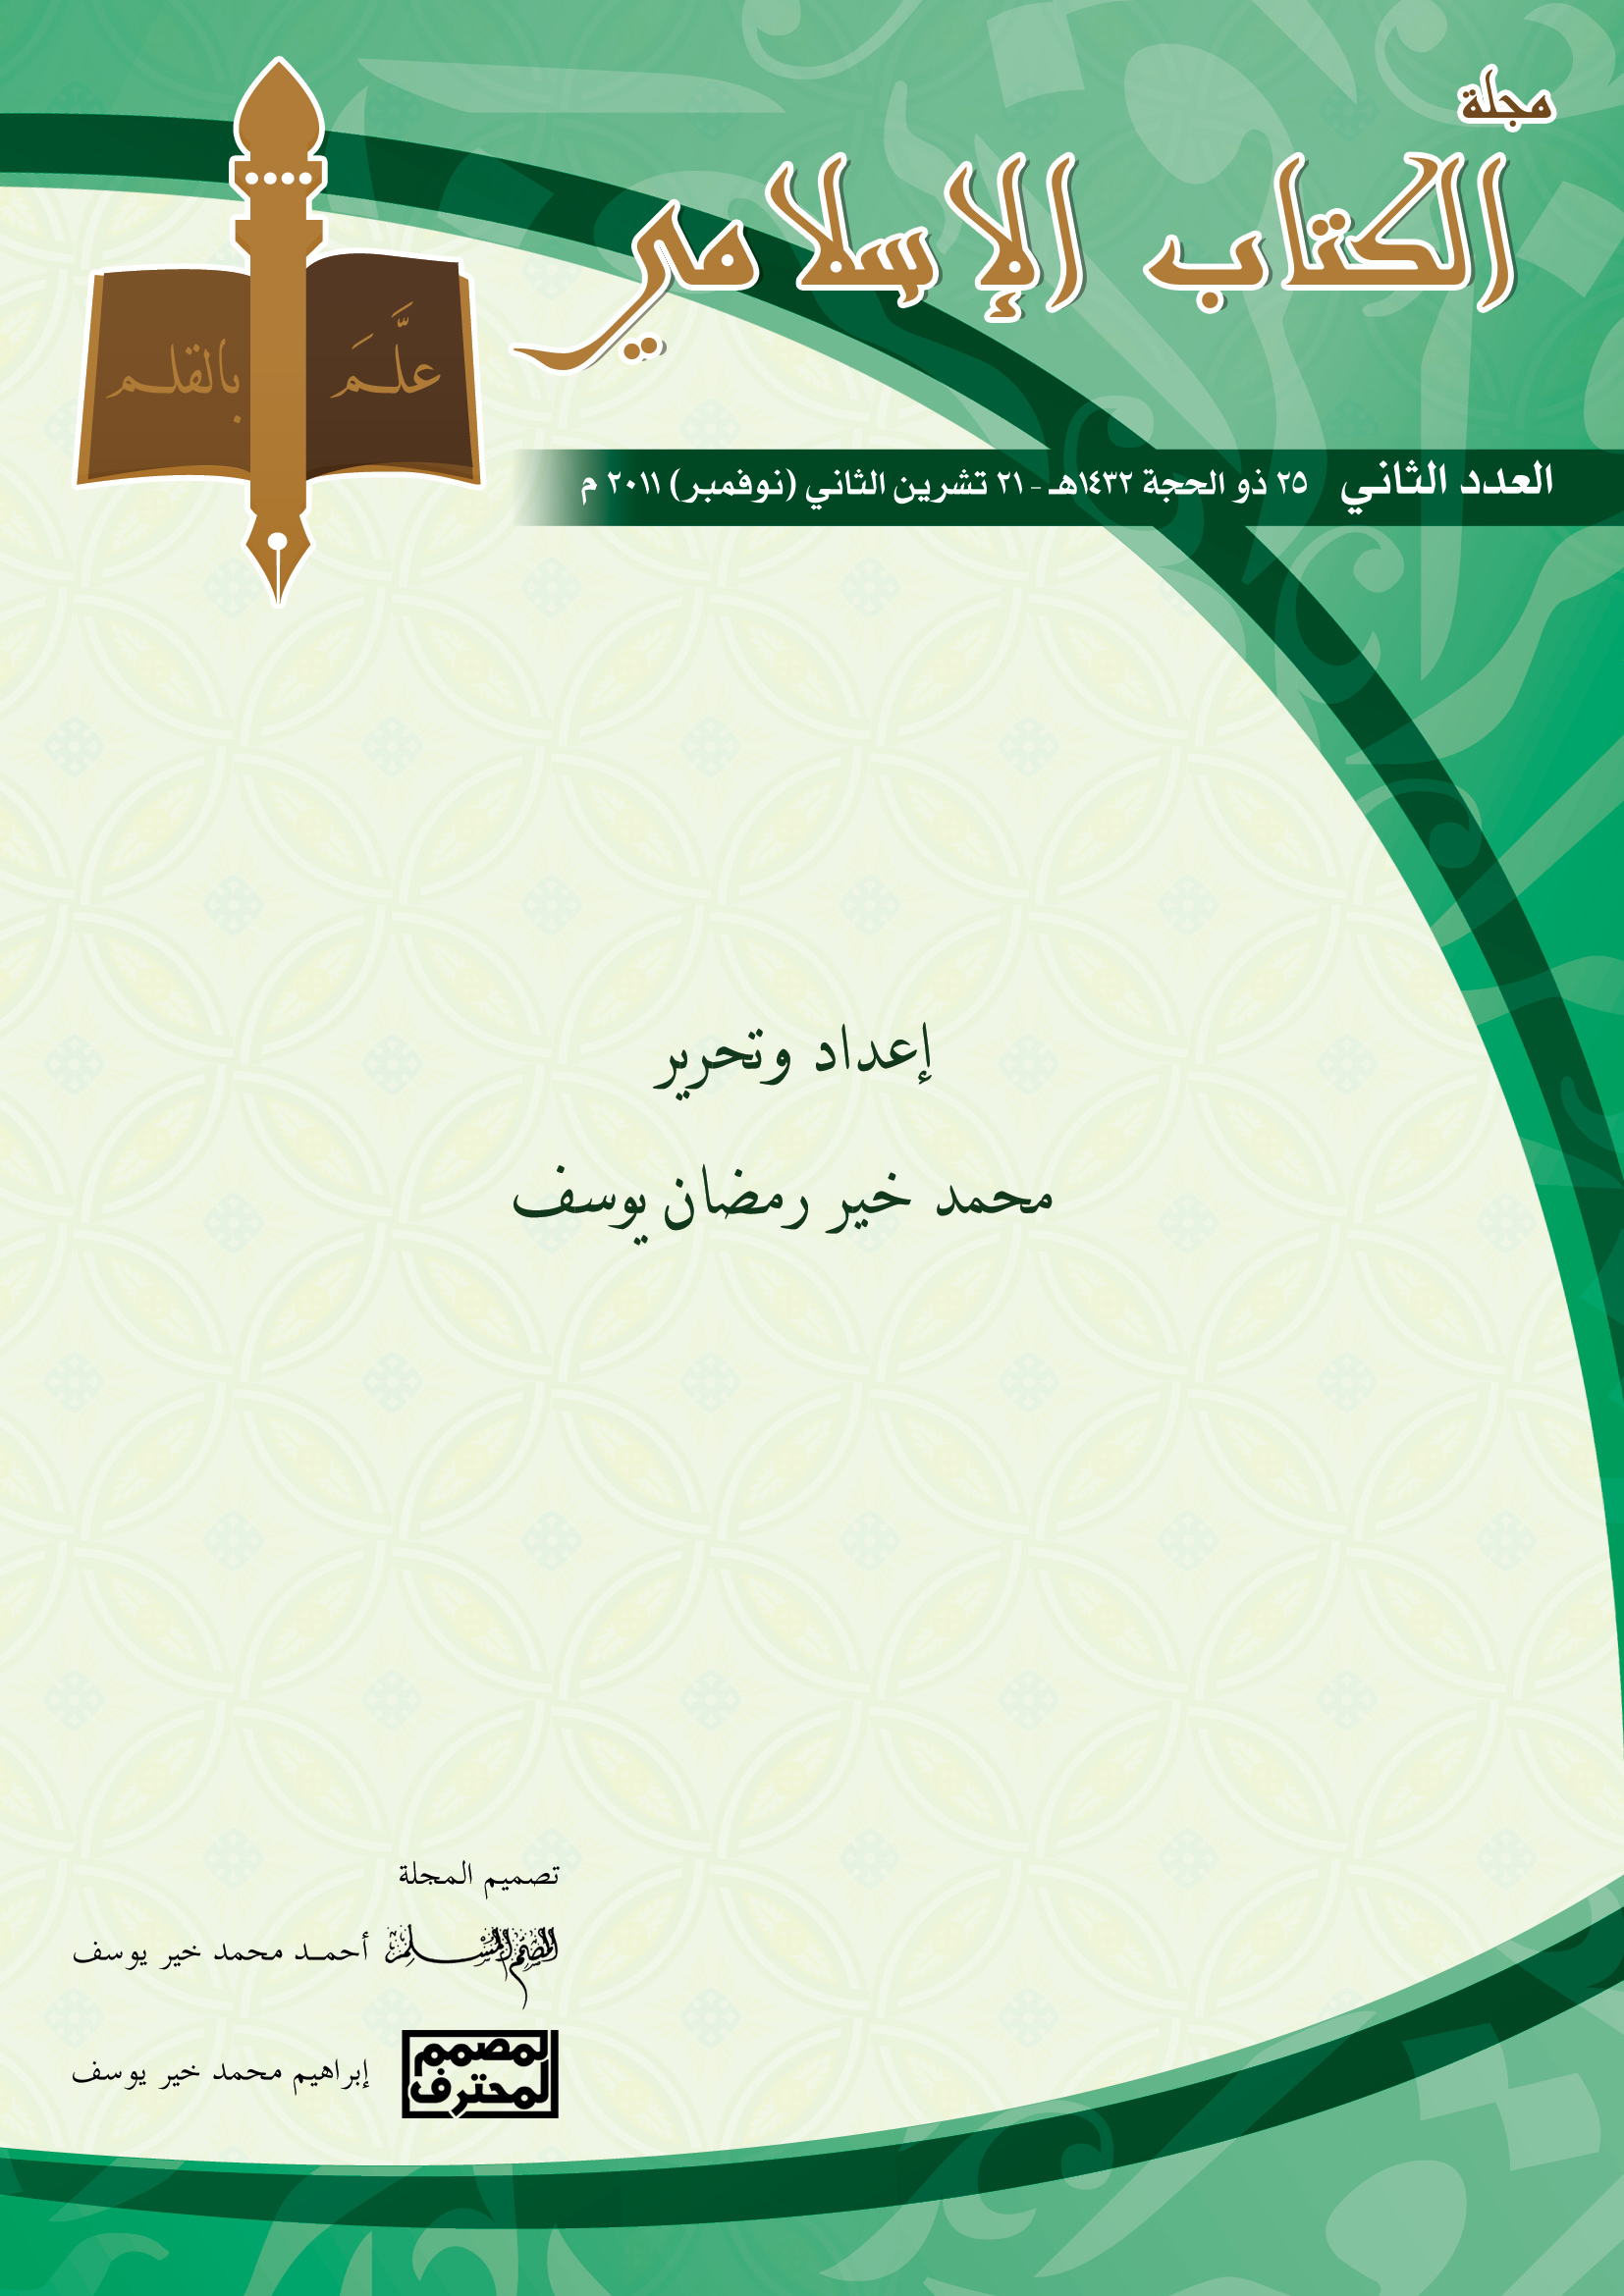 غلاف العدد الثاني من مجلة الكتاب الإسلامي